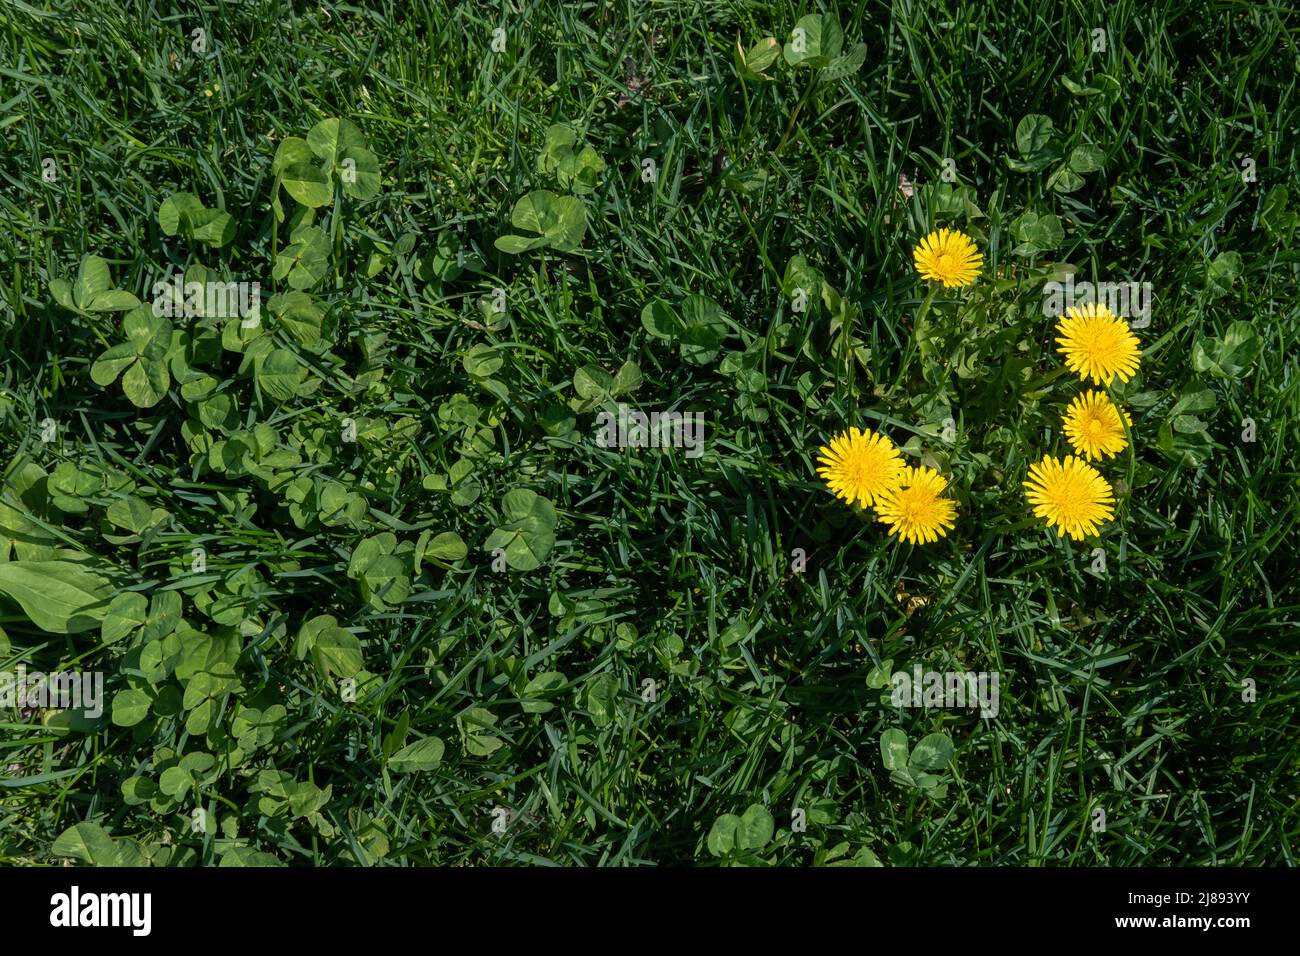 Foto von Elandelionpflanzen und Kleeblatt im Grasrasen Stockfoto